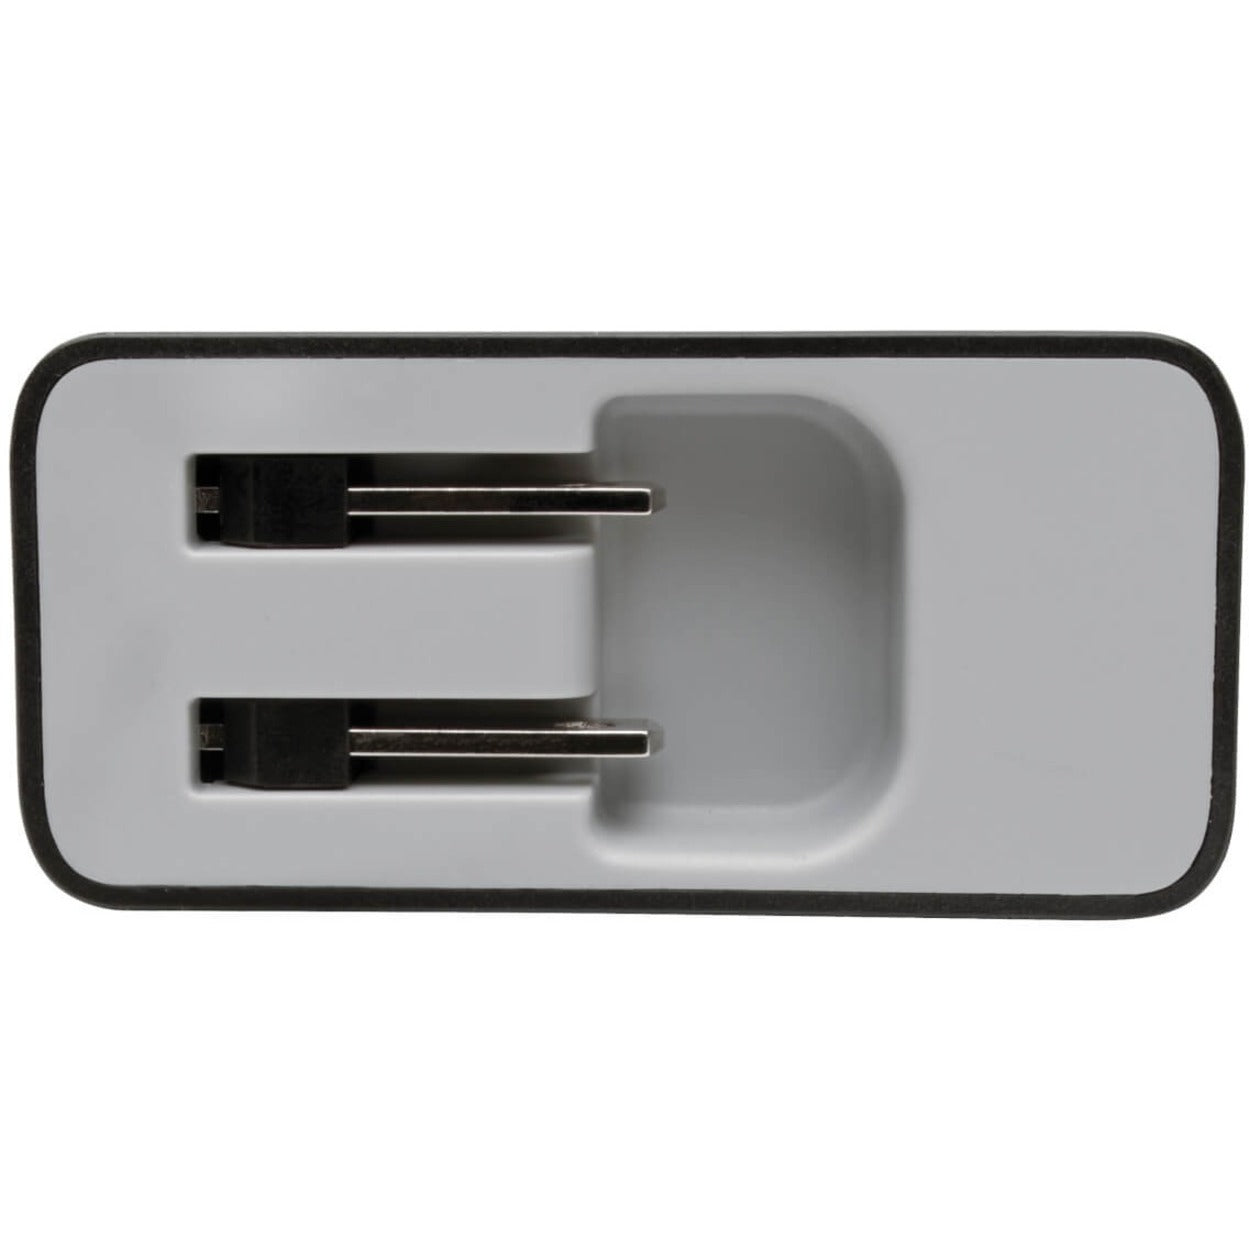 트리프 라이트 U280-W02-A1C1 AC 어댑터 2PT USB 월 충전기 with USB 타입 C 51W 전력 2년 보증